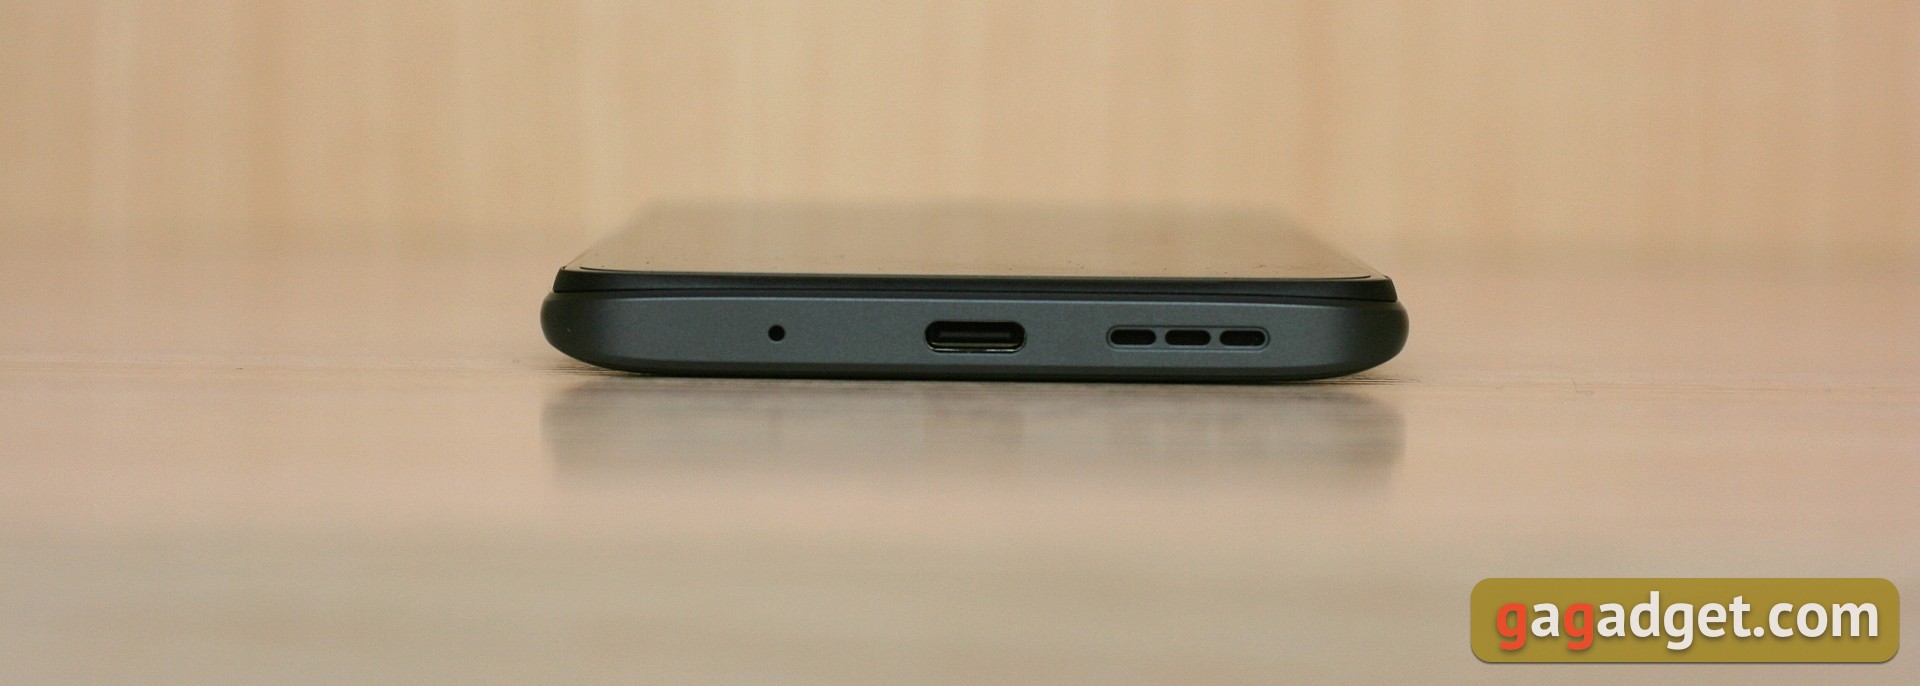 Análisis del Xiaomi Redmi 10: el legendario fabricante de presupuestos, ahora con una cámara de 50 megapíxeles-6